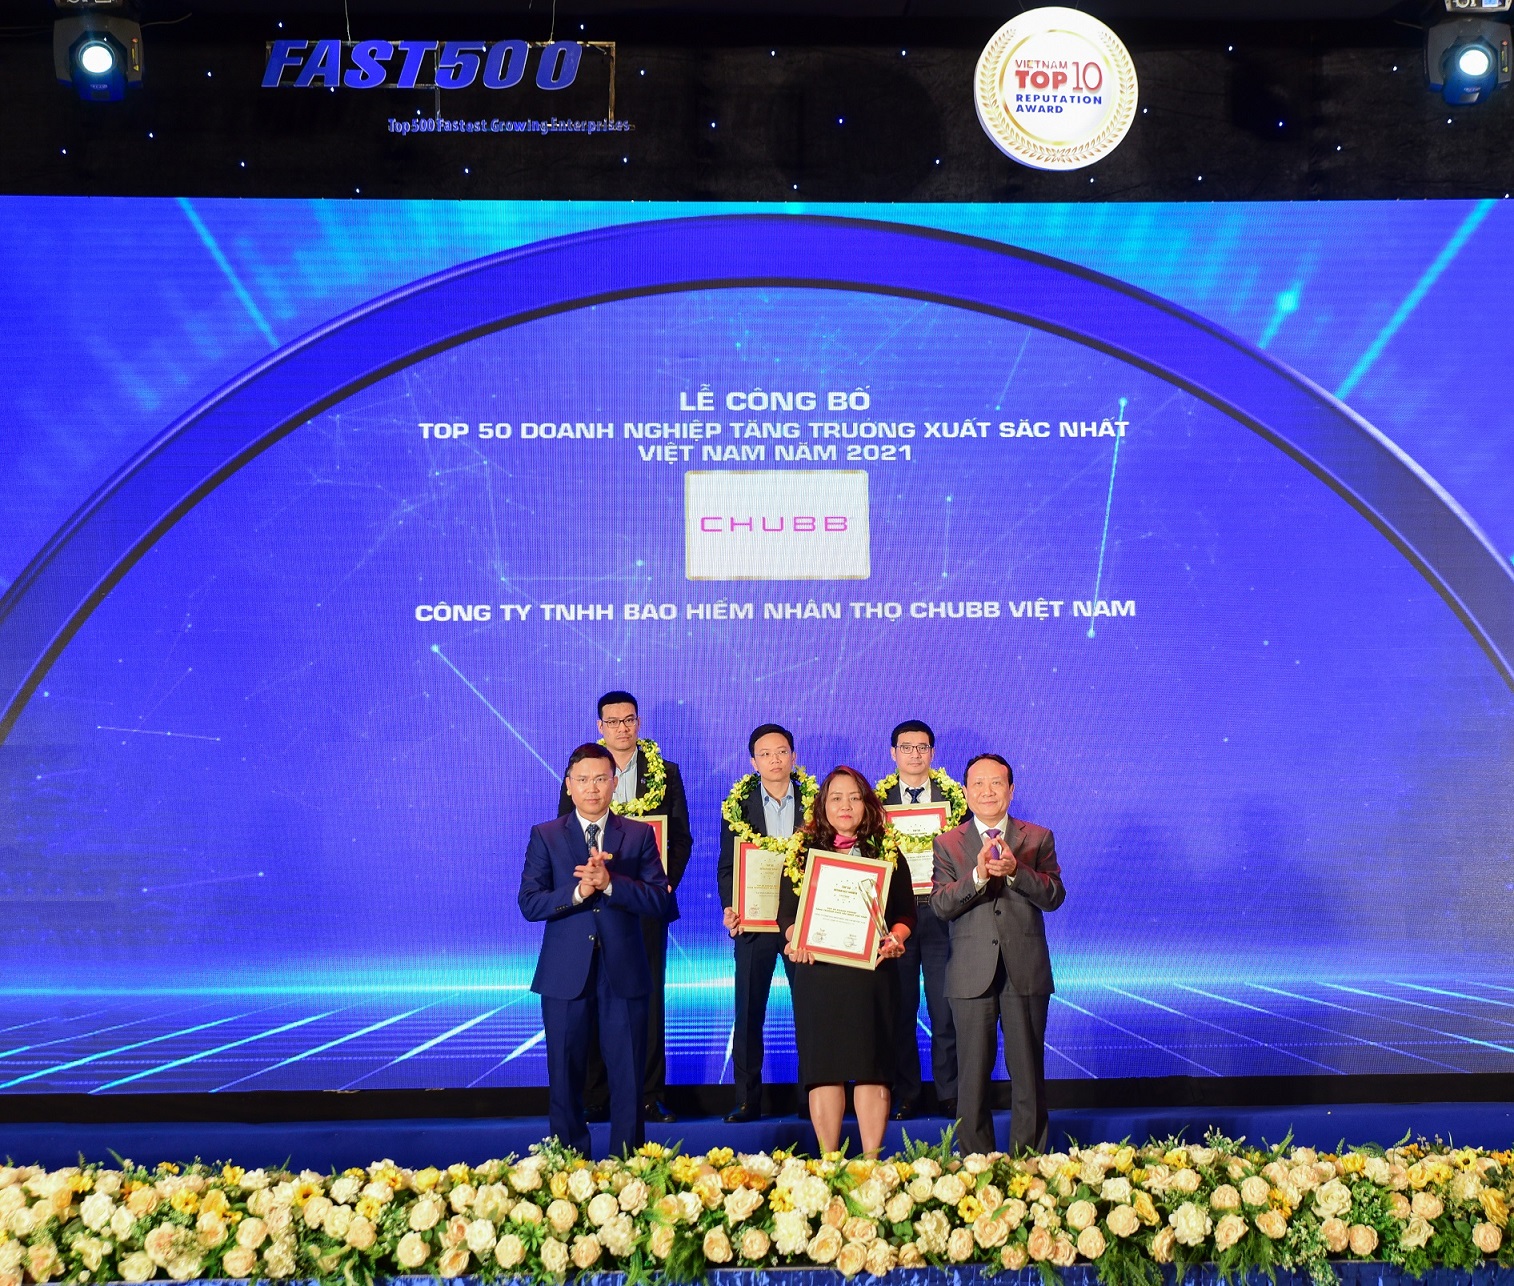 Lễ công bố “Top 50 doanh nghiệp tăng trưởng xuất sắc nhất Việt Nam năm 2021” – Chubb Life vinh dự được vào danh sách